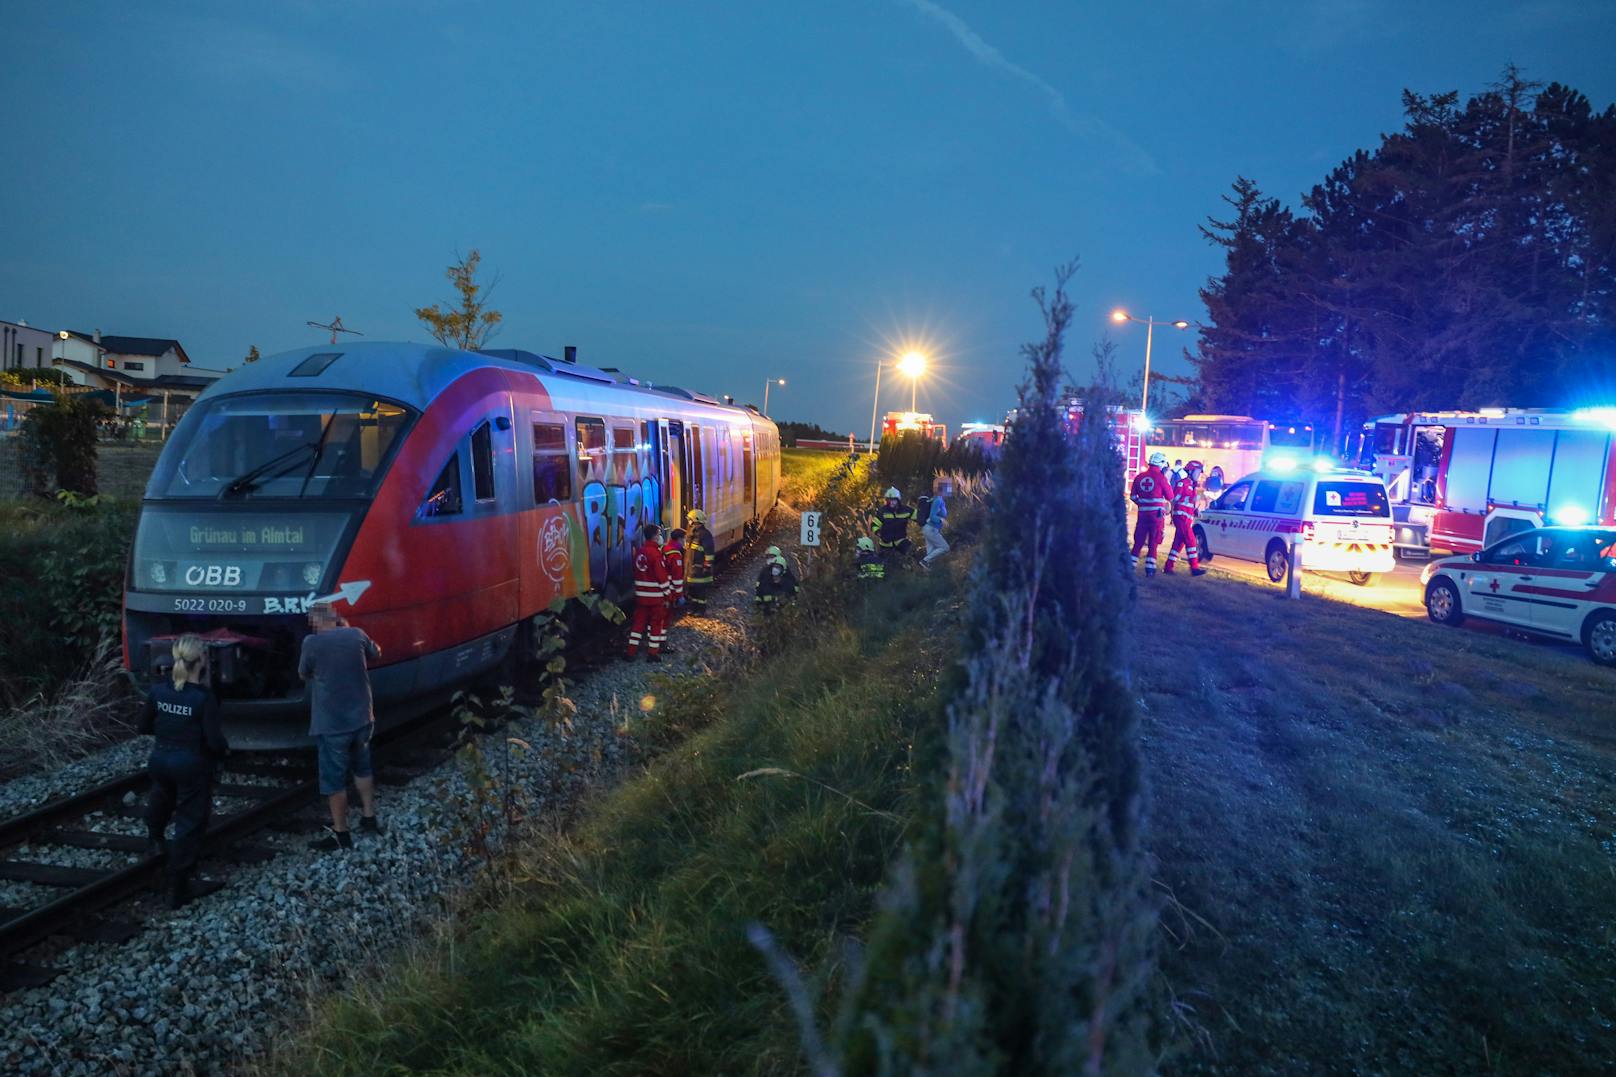 Rauch im Triebwagen, 25 Fahrgäste aus Zug evakuiert